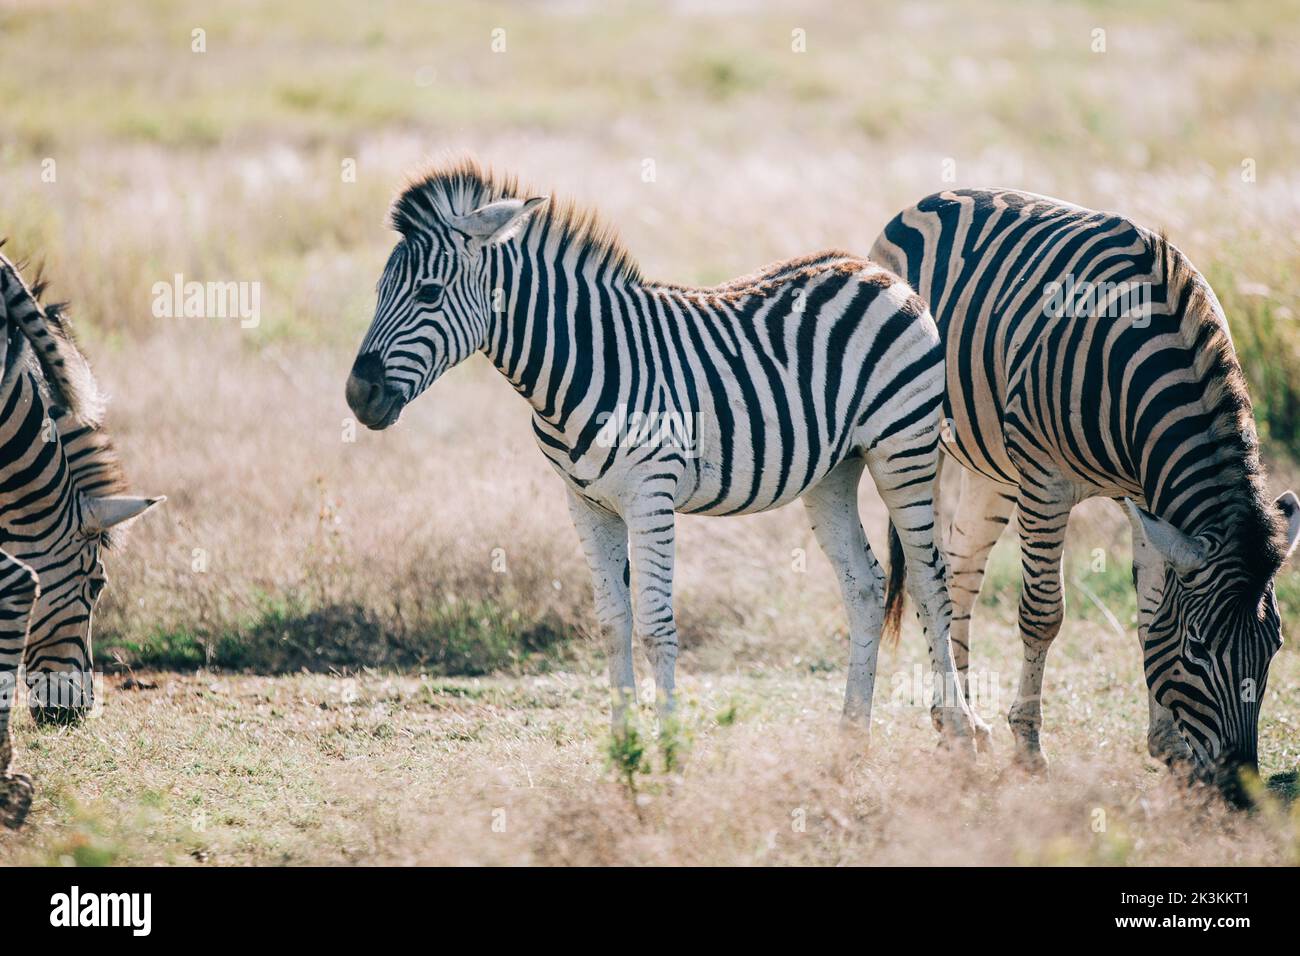 Das kleine Zebra schaut auf die Kamera, während es in der Herde knabbert und schleicht Stockfoto